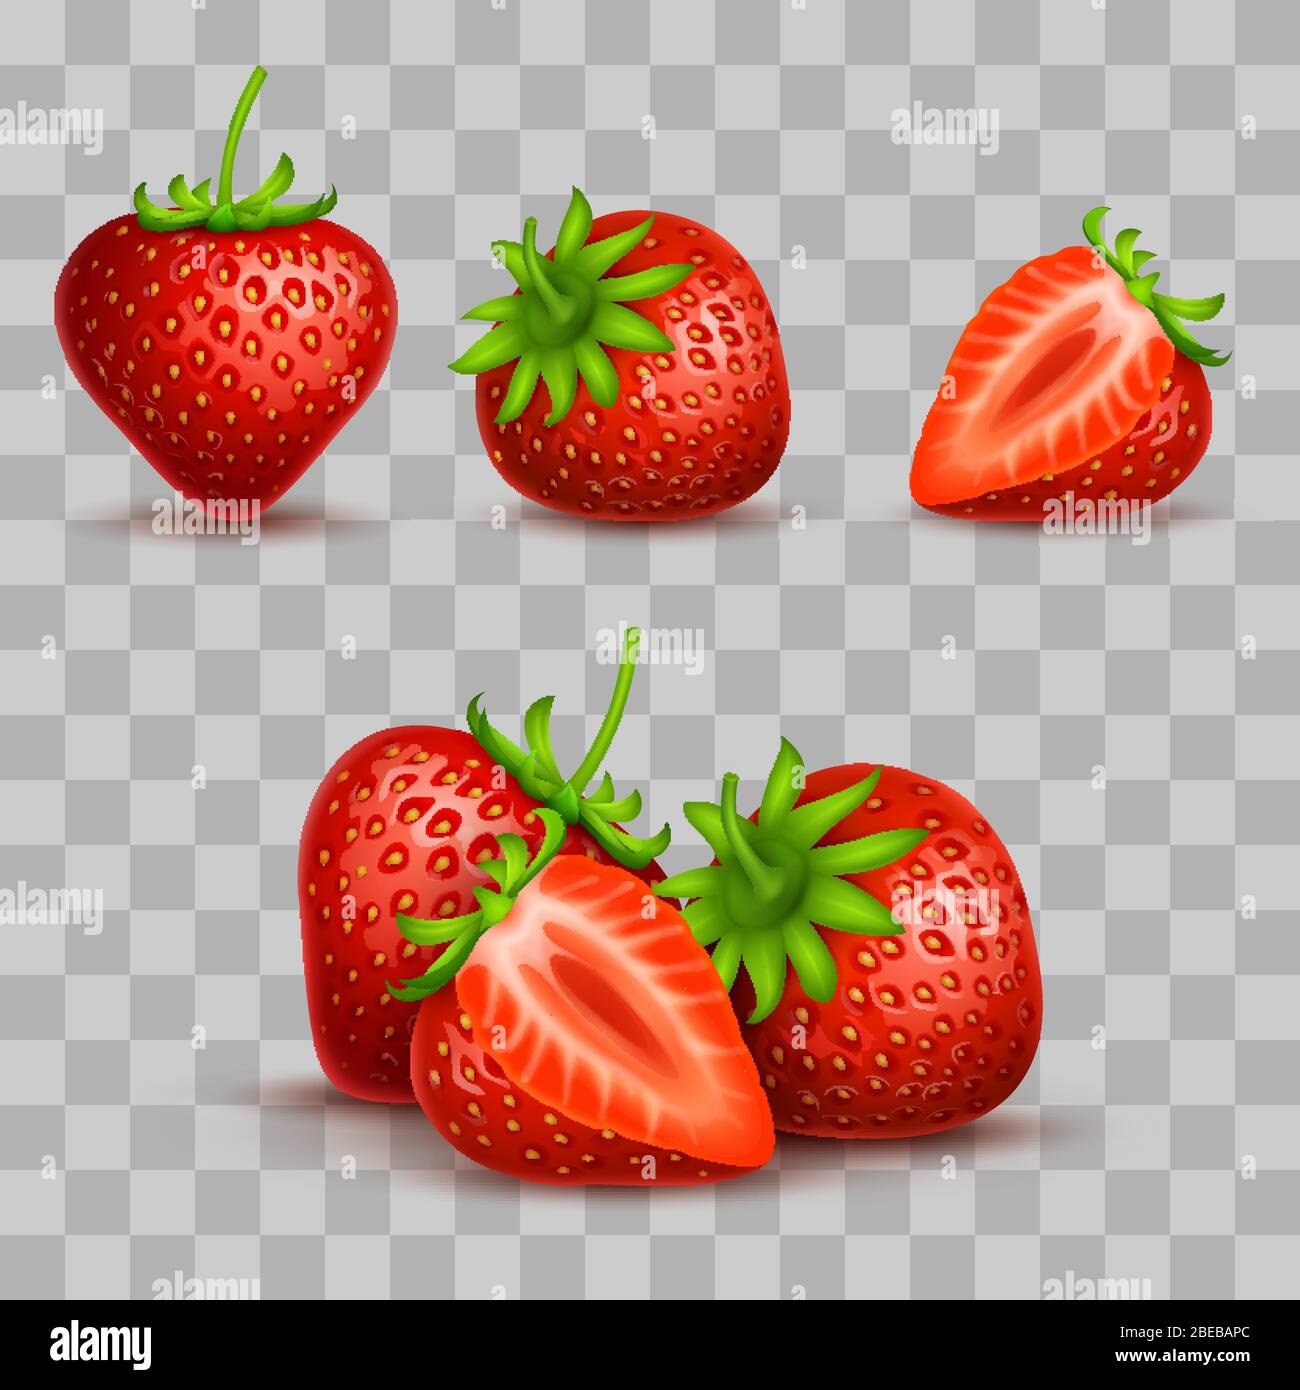 Vektor realistische süße und frische Erdbeere isoliert auf transparentem Hintergrund. Süße Erdbeerfrucht, Illustration von frischem saftigem Dessert Stock Vektor